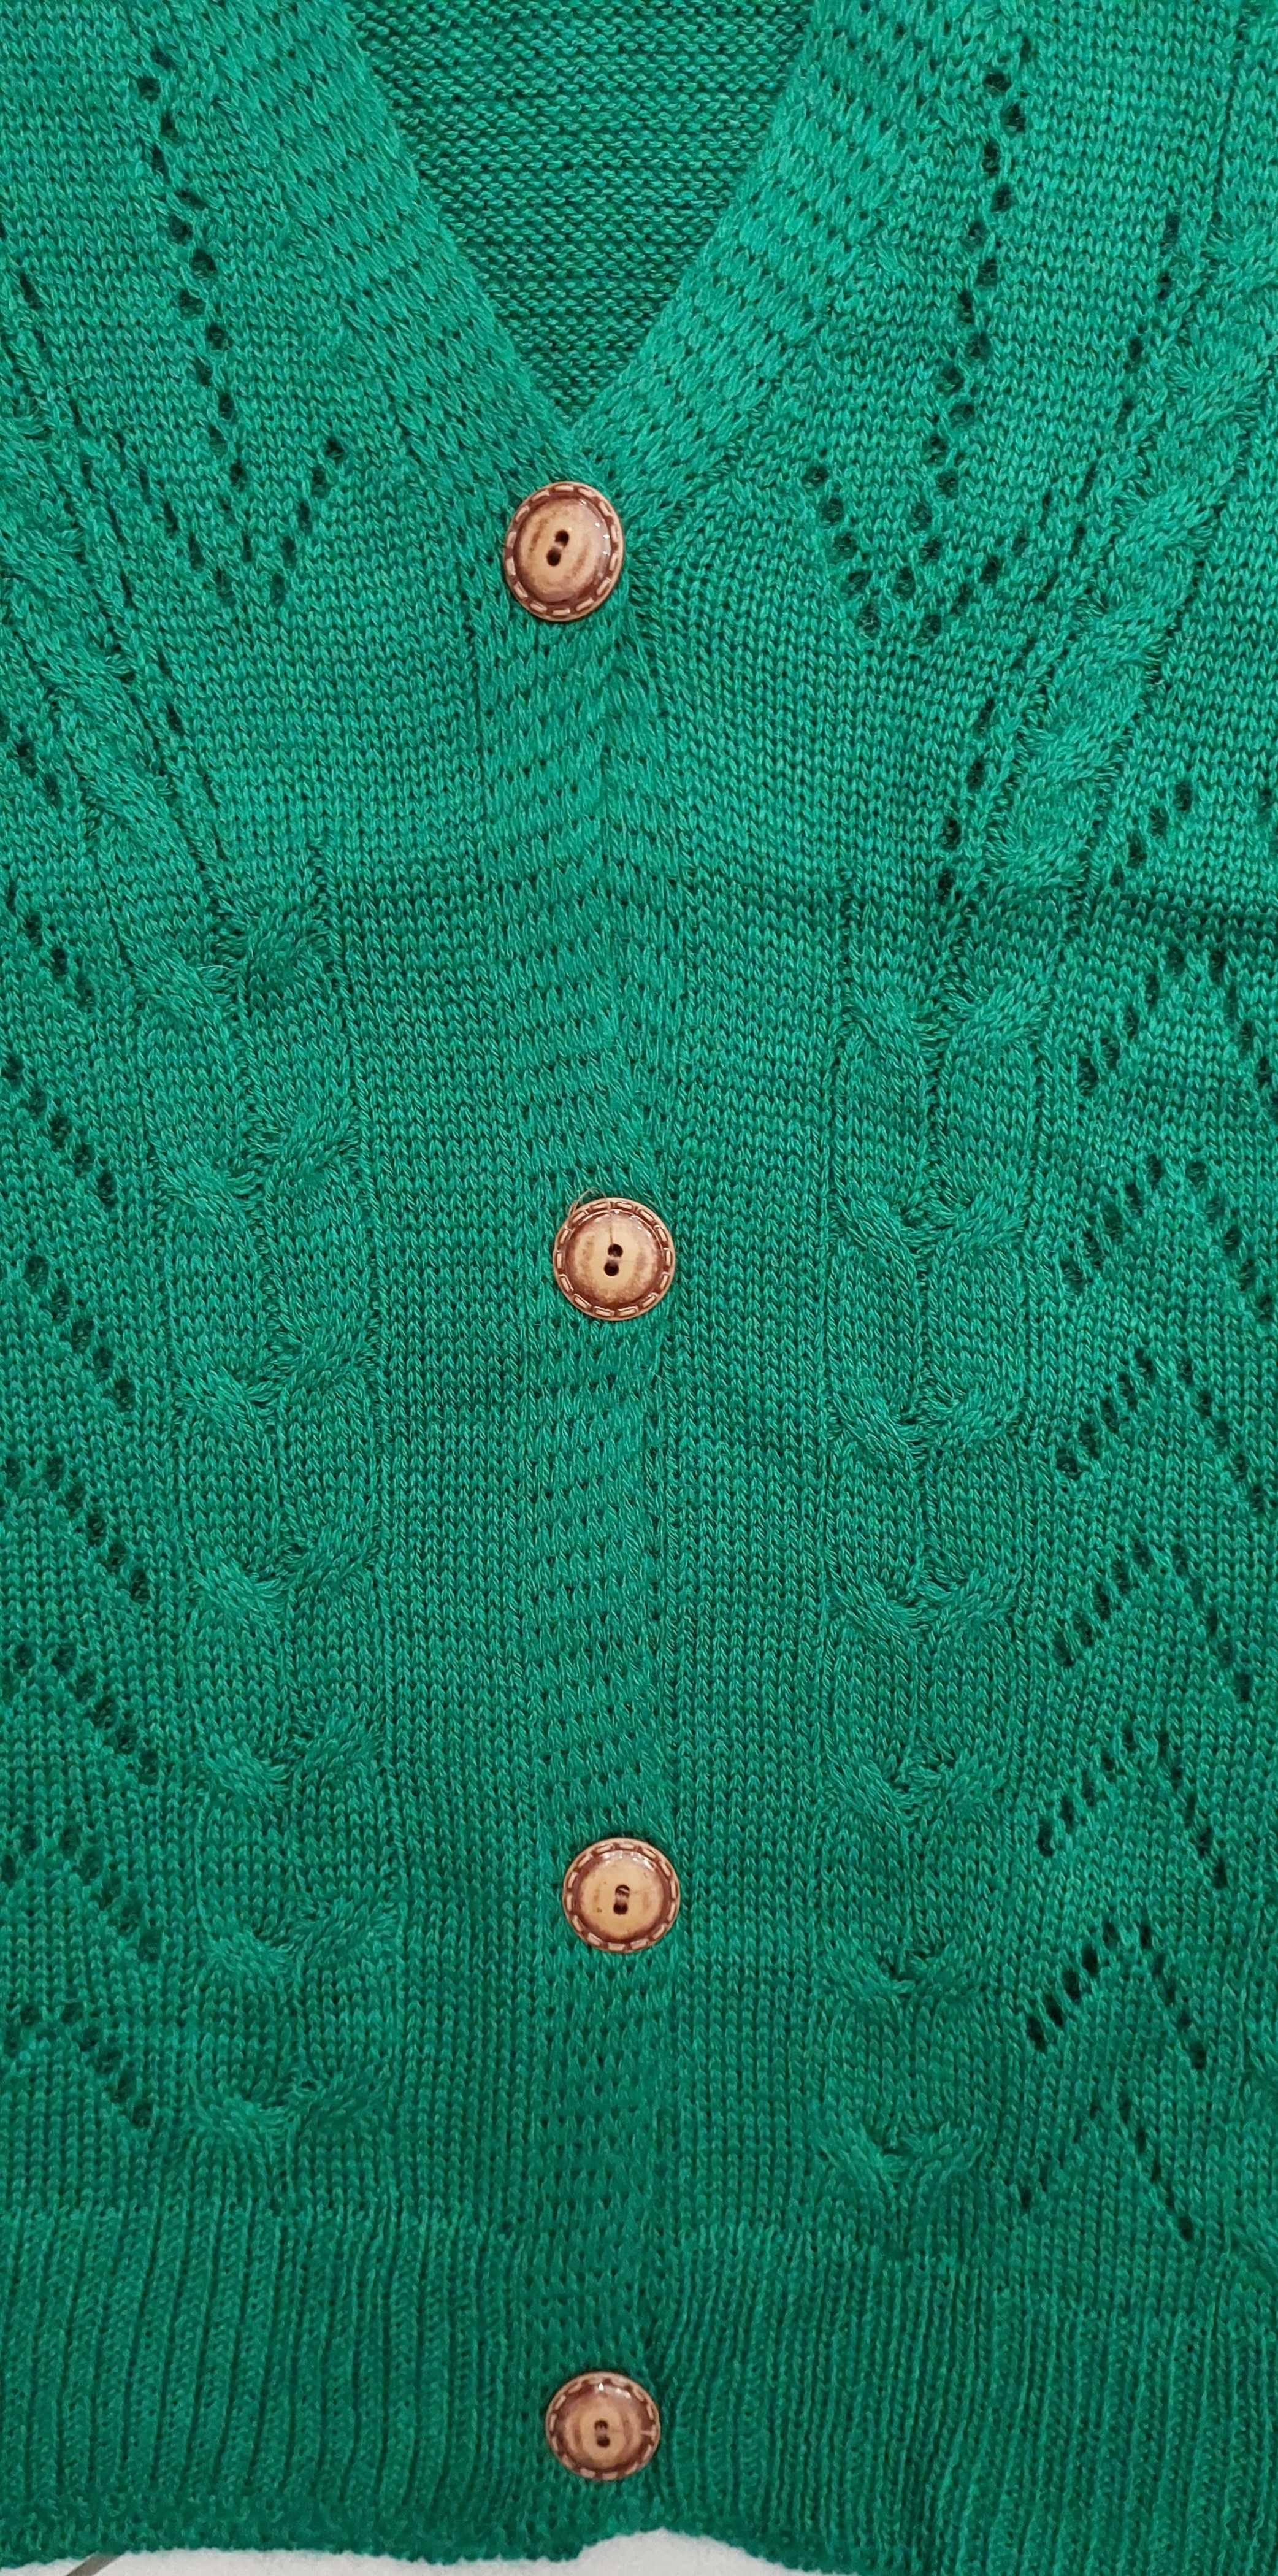 Sweter zielony  rozpinany, R. UNI